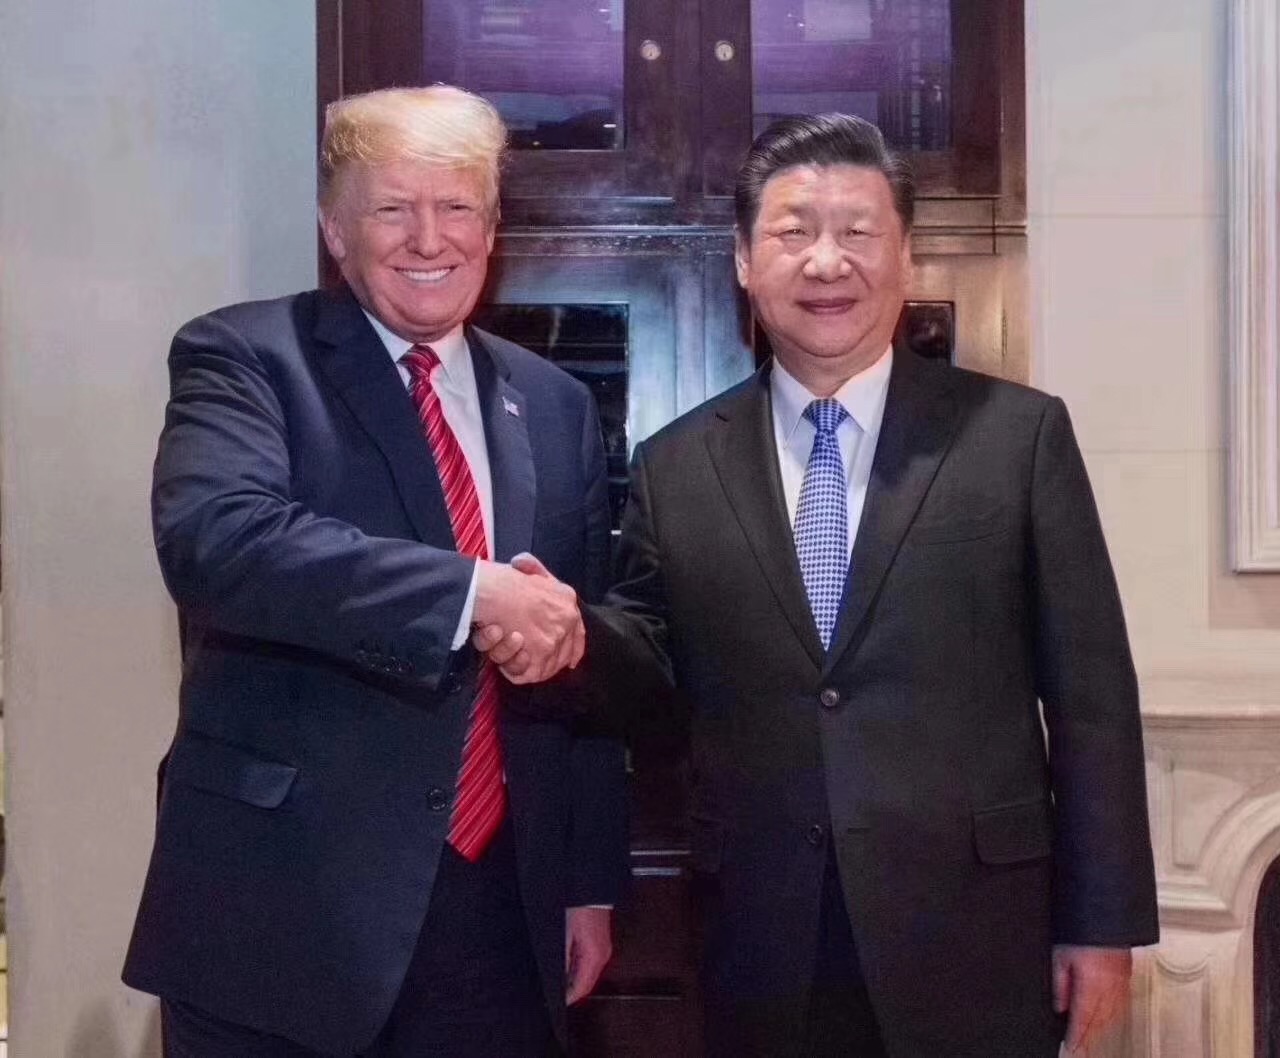 [The historic handshake between Donald John Trump and Xi Jinping]